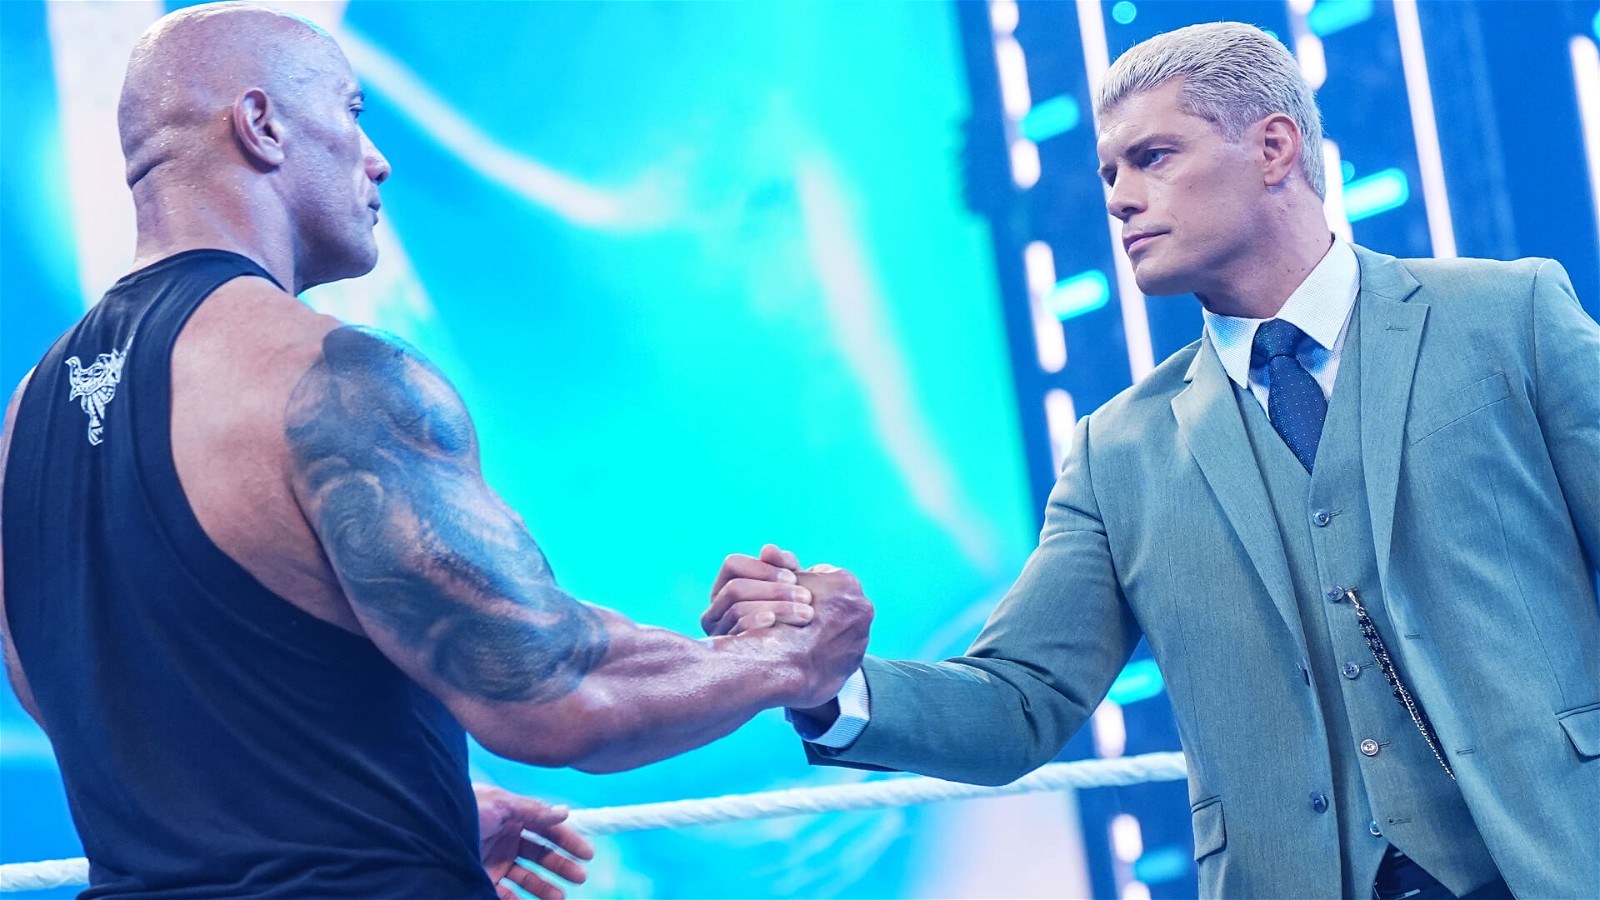 Коди Роудс все еще может встретиться с Романом Рейнсом на WrestleMania - WWE намекает на изменение планов относительно Дуэйна Джонсона на RAW